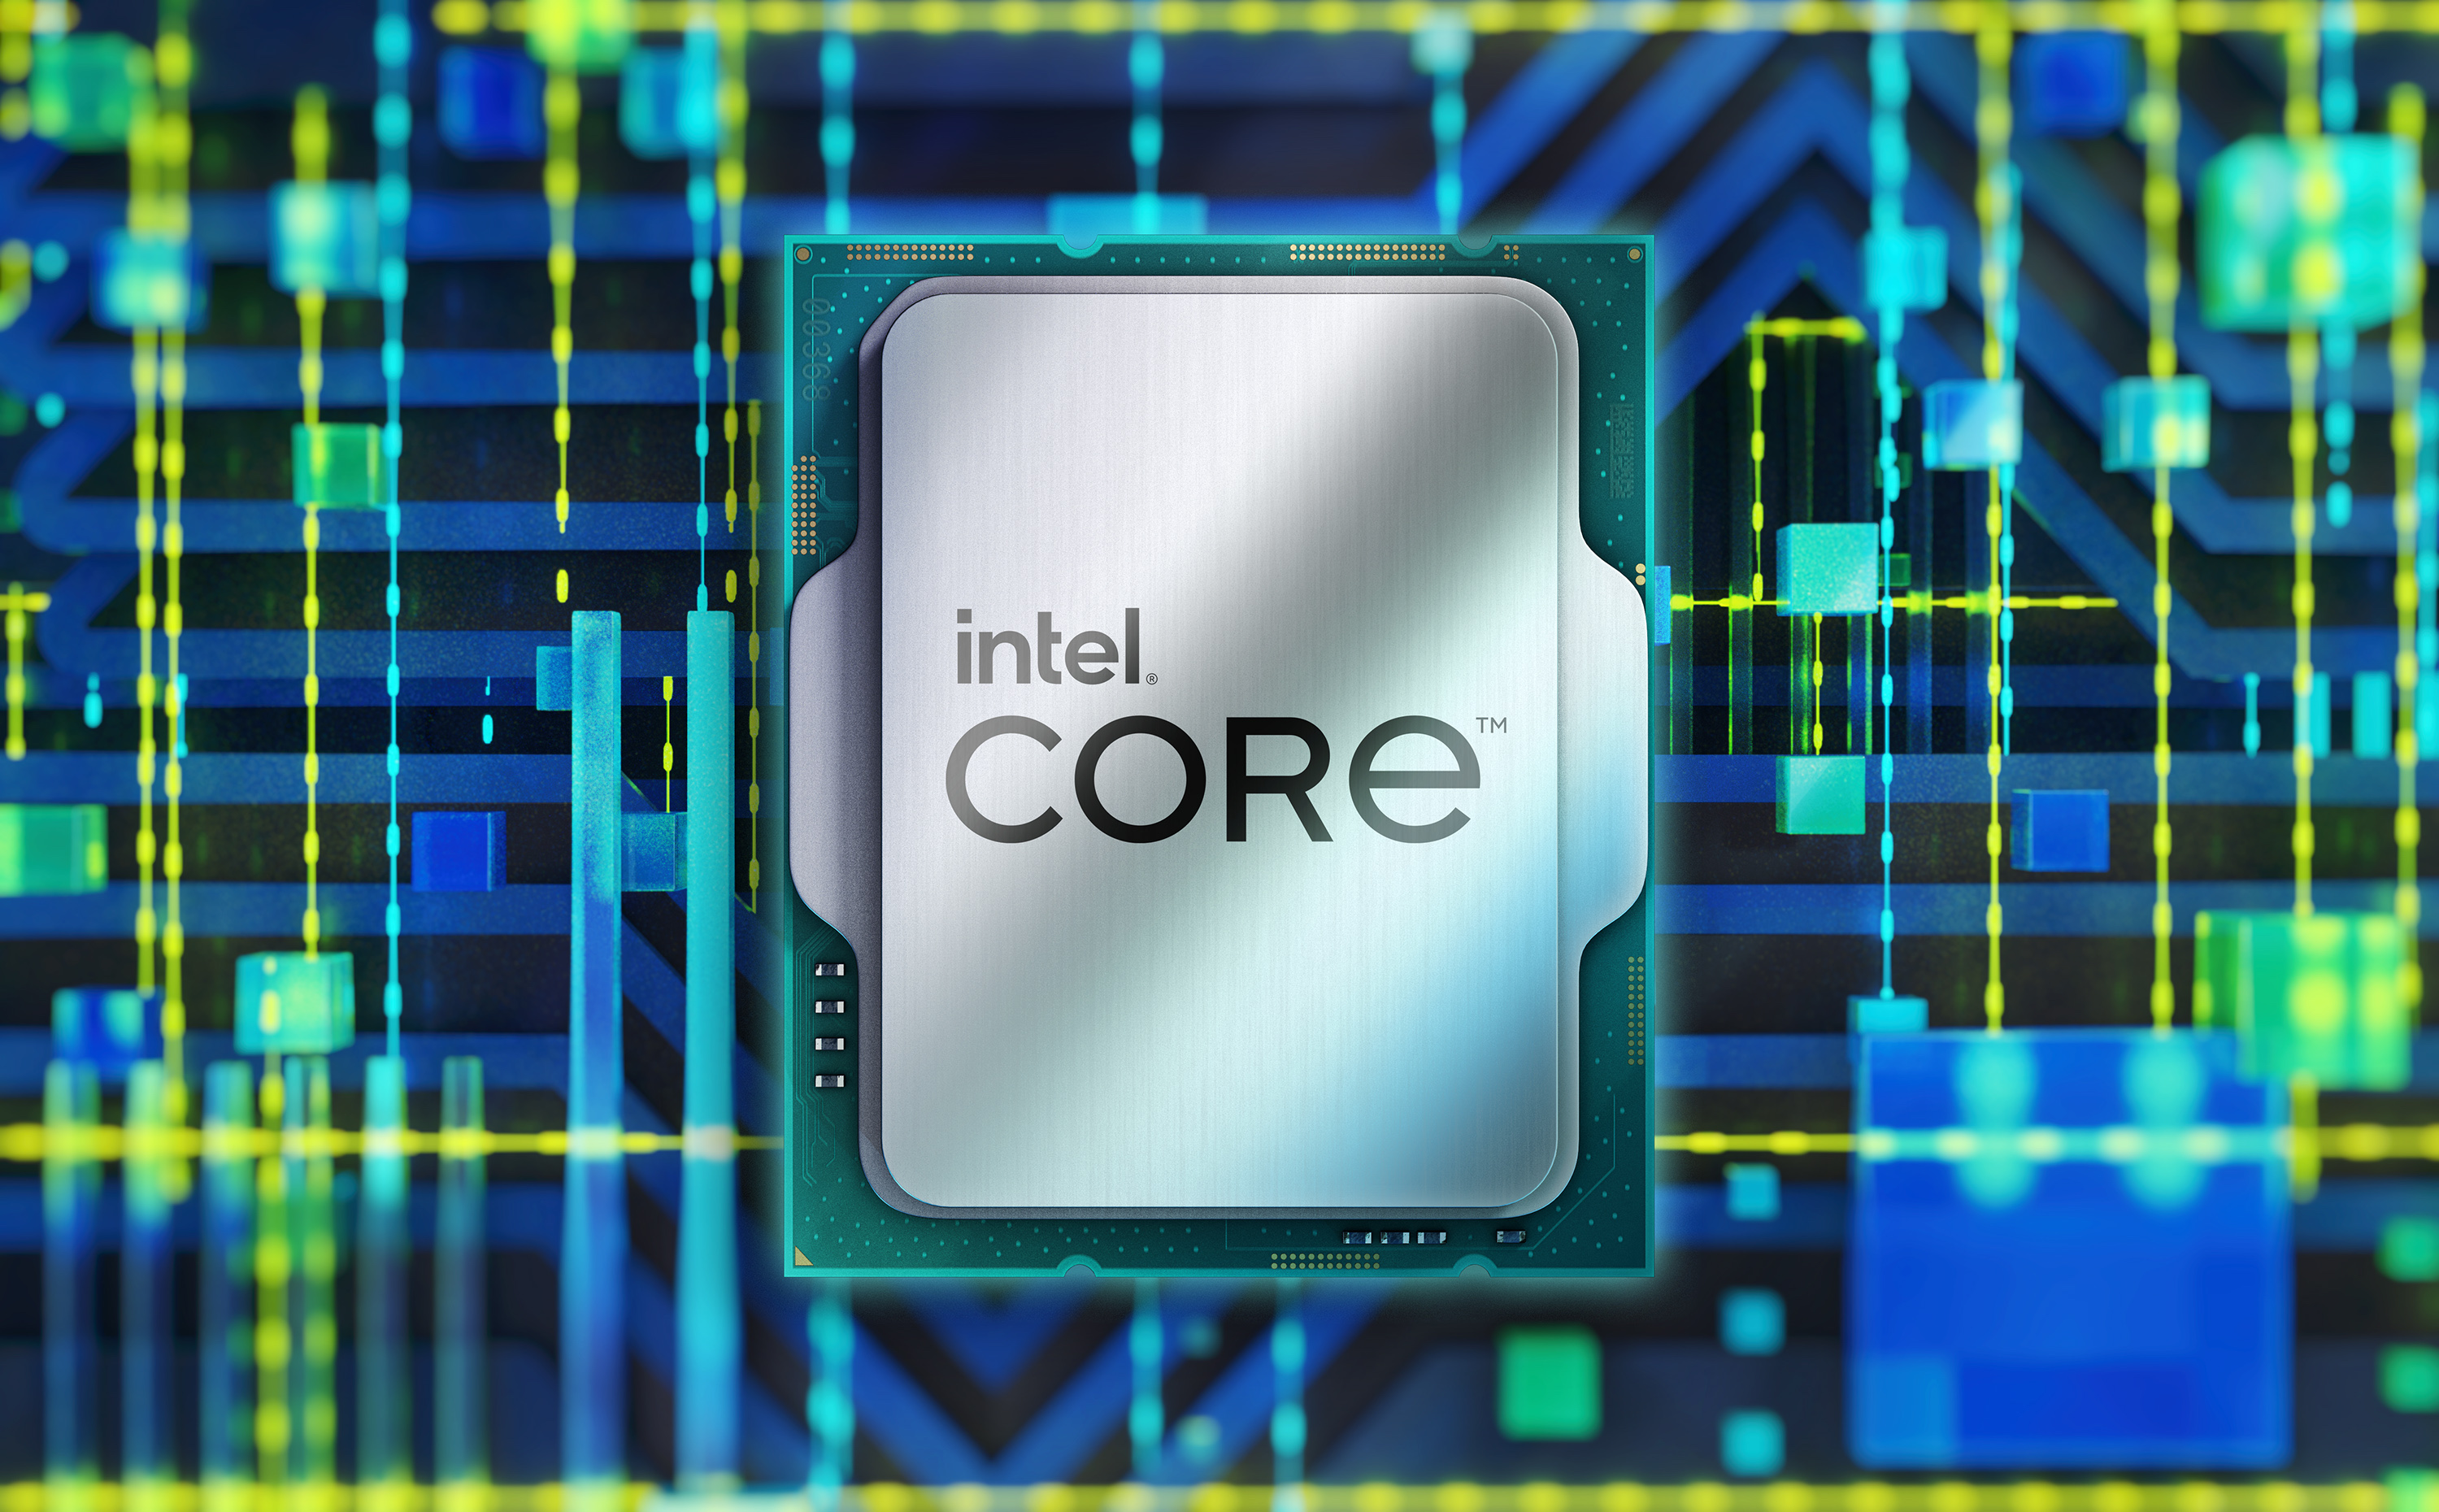 Procesor Intel Core i7-12700F je speciálně určený pro základní desky s paticí LGA1700 z řady Intel 600 Series, kdy se pyšní 12 jádry s maximálním taktem až 4,9 GHz diky TB 3.0 technologii.